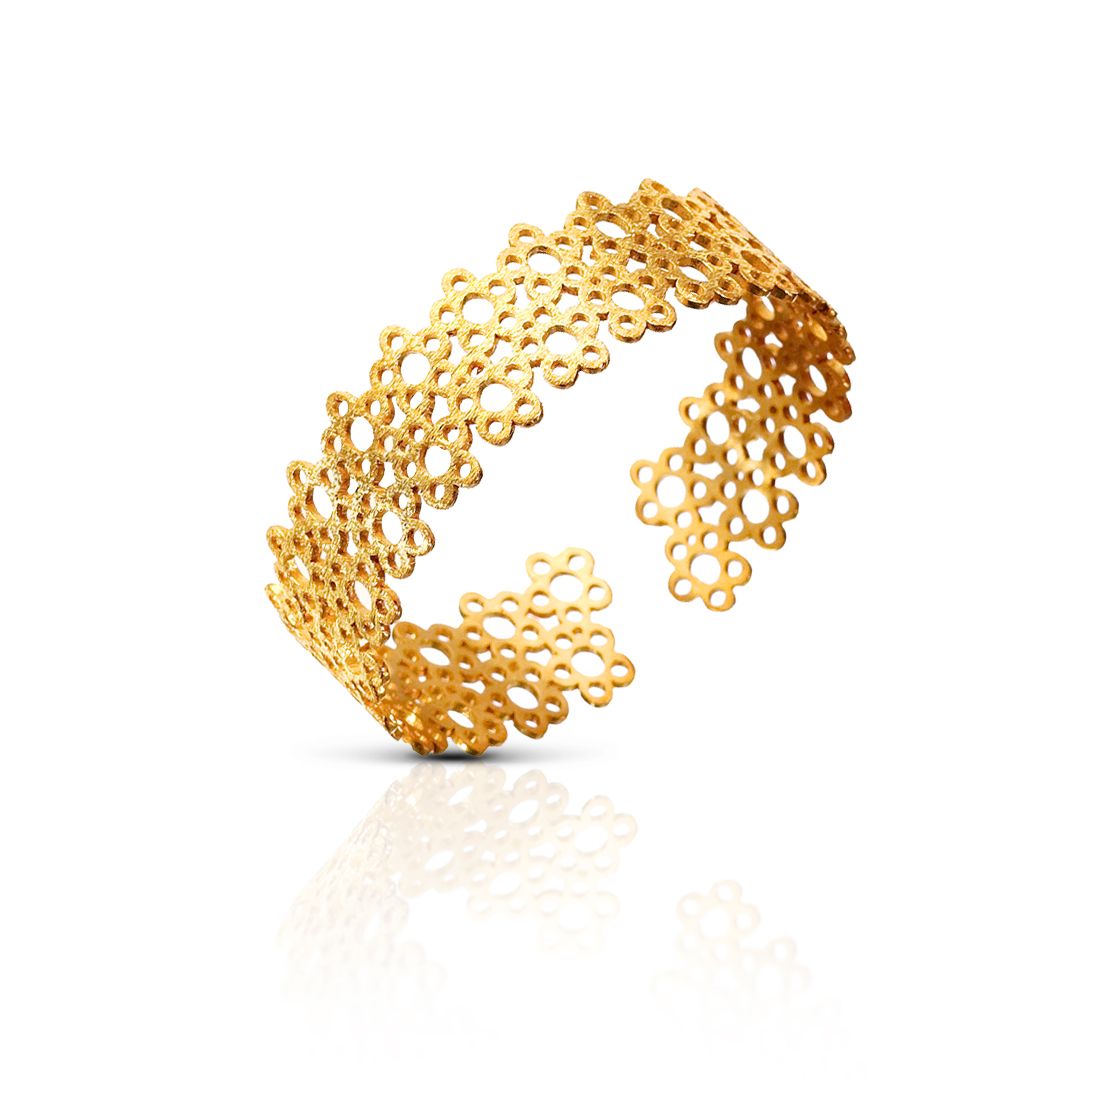 Gold flower clusters decorate a classic cuff bracelet.